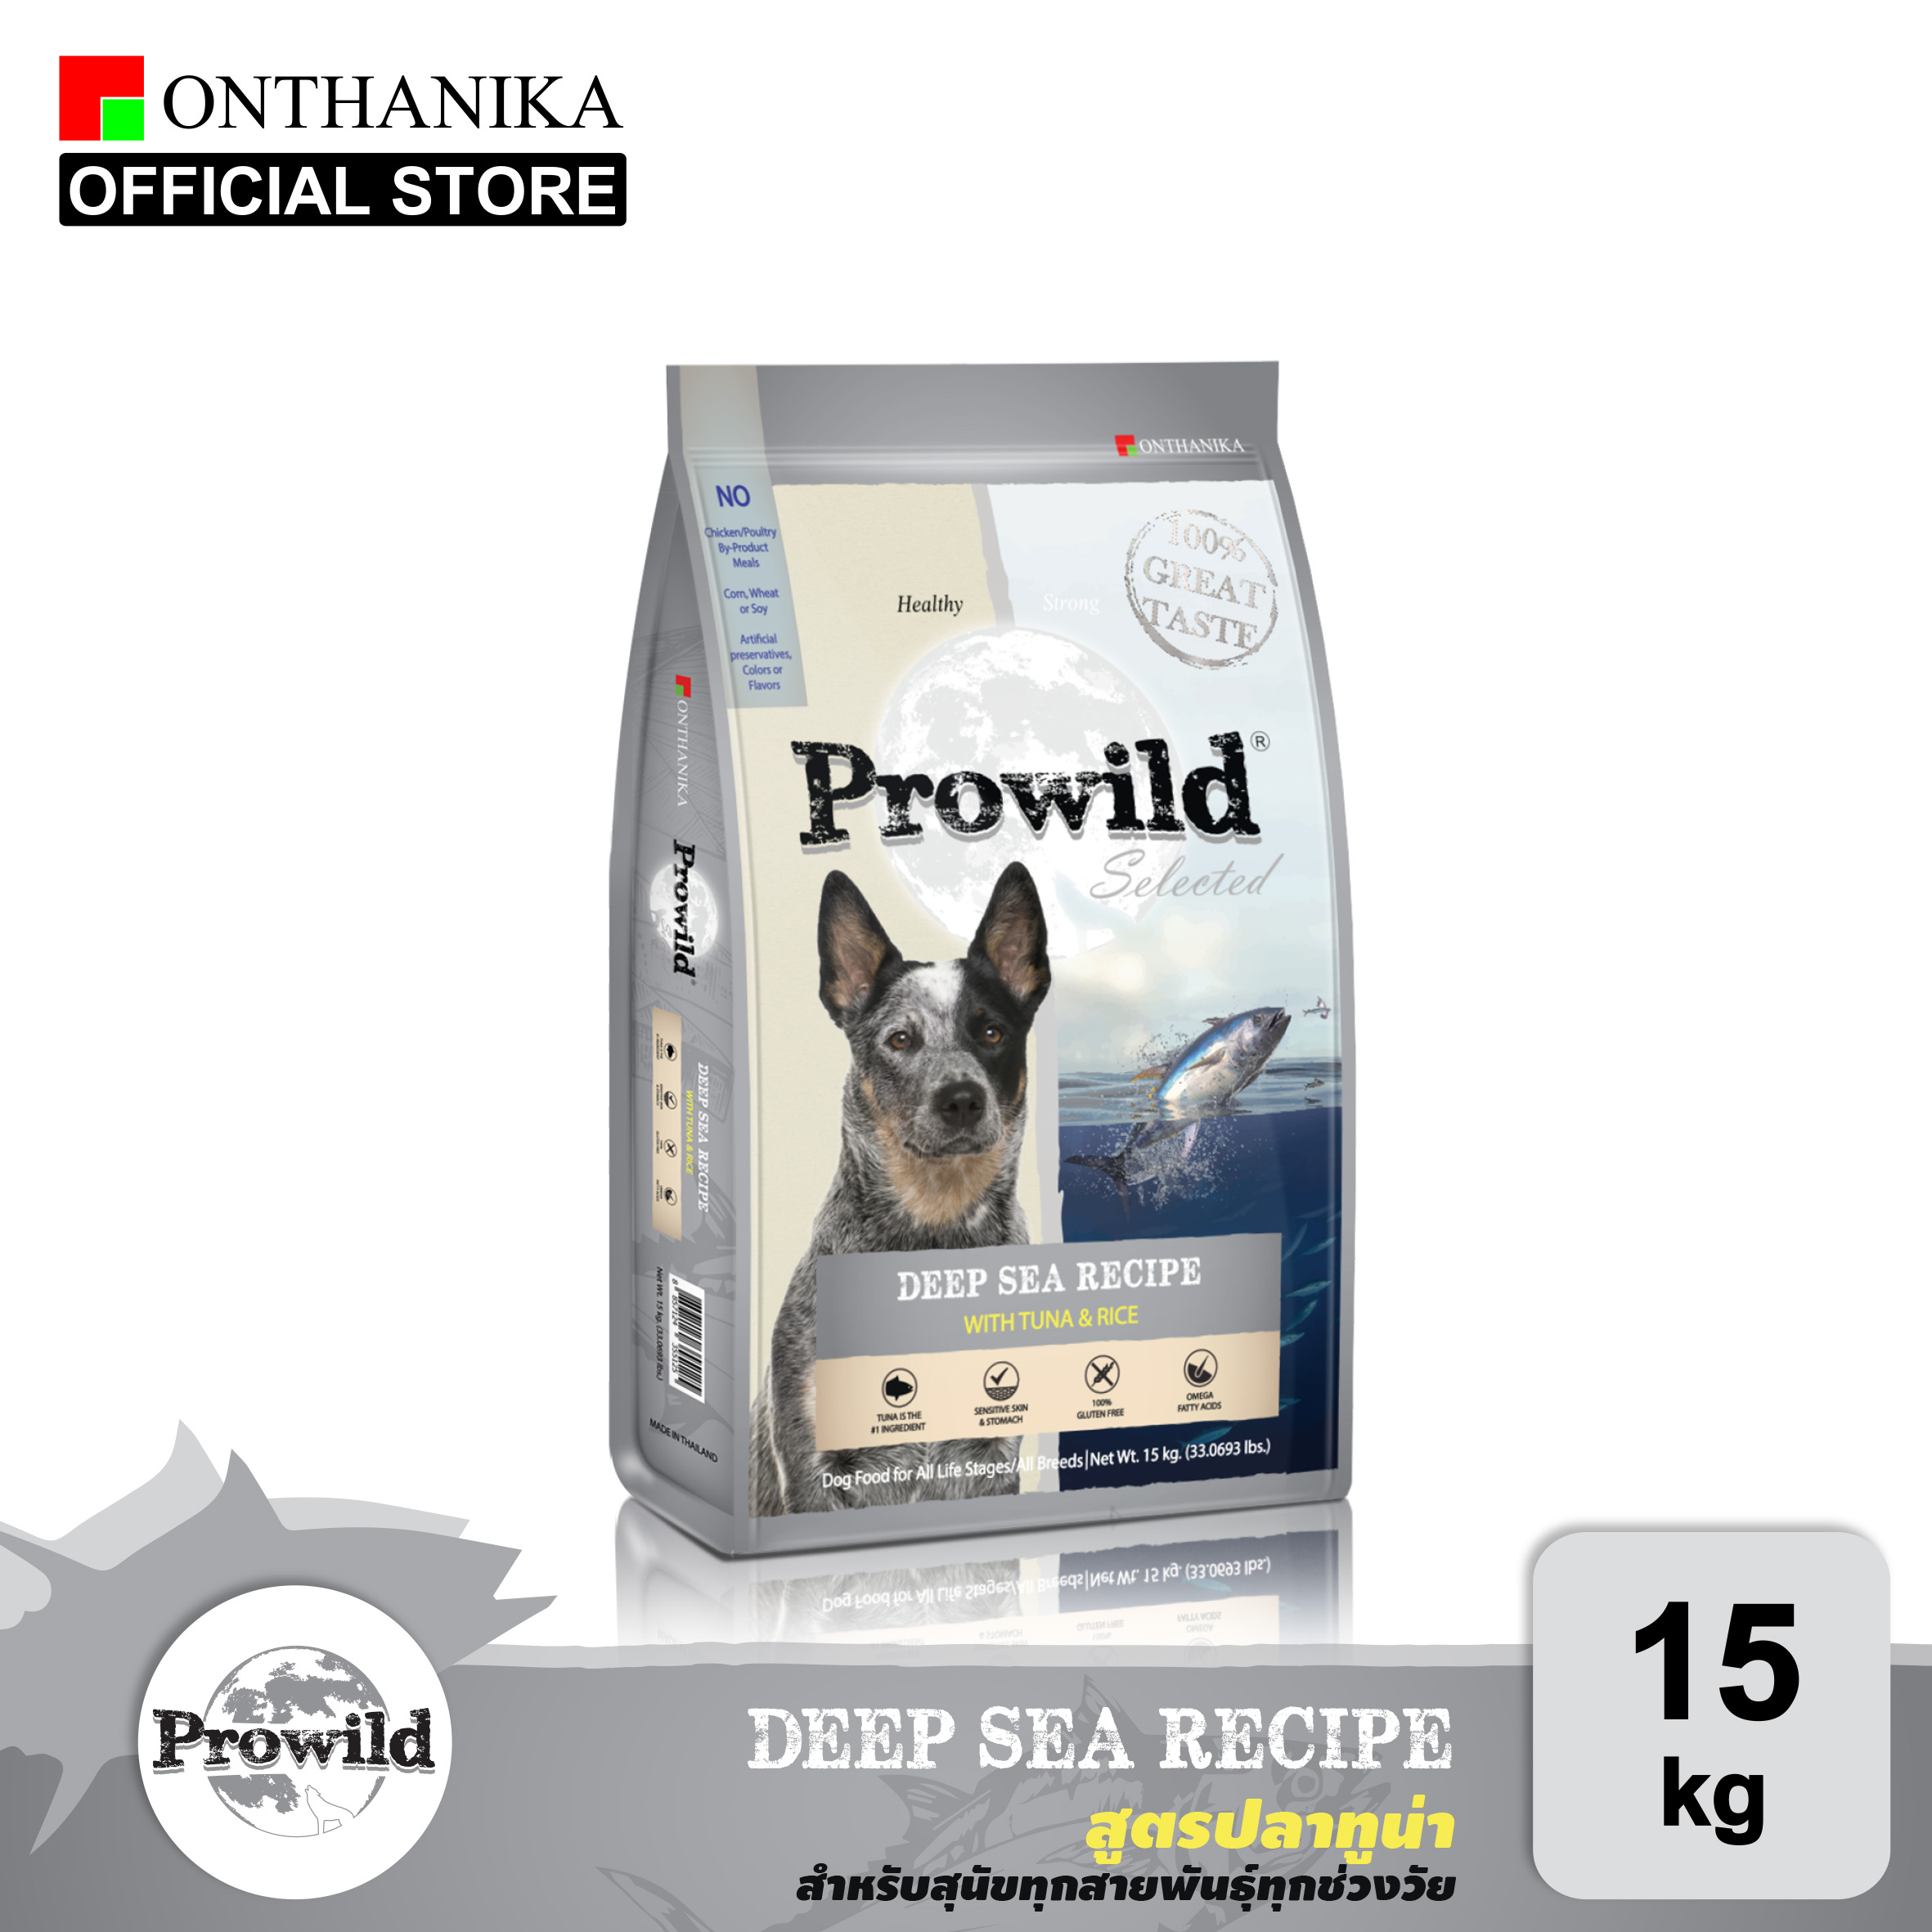 [ส่งฟรี] Prowild โปรไวลด์ ดีพ ซี สูตรปลาทูน่า อาหารสุนัขทุกสายพันธุ์/ทุกช่วงวัย 15 kg (ถุงย่อยภายใน 5 kg x 3 ถุง)